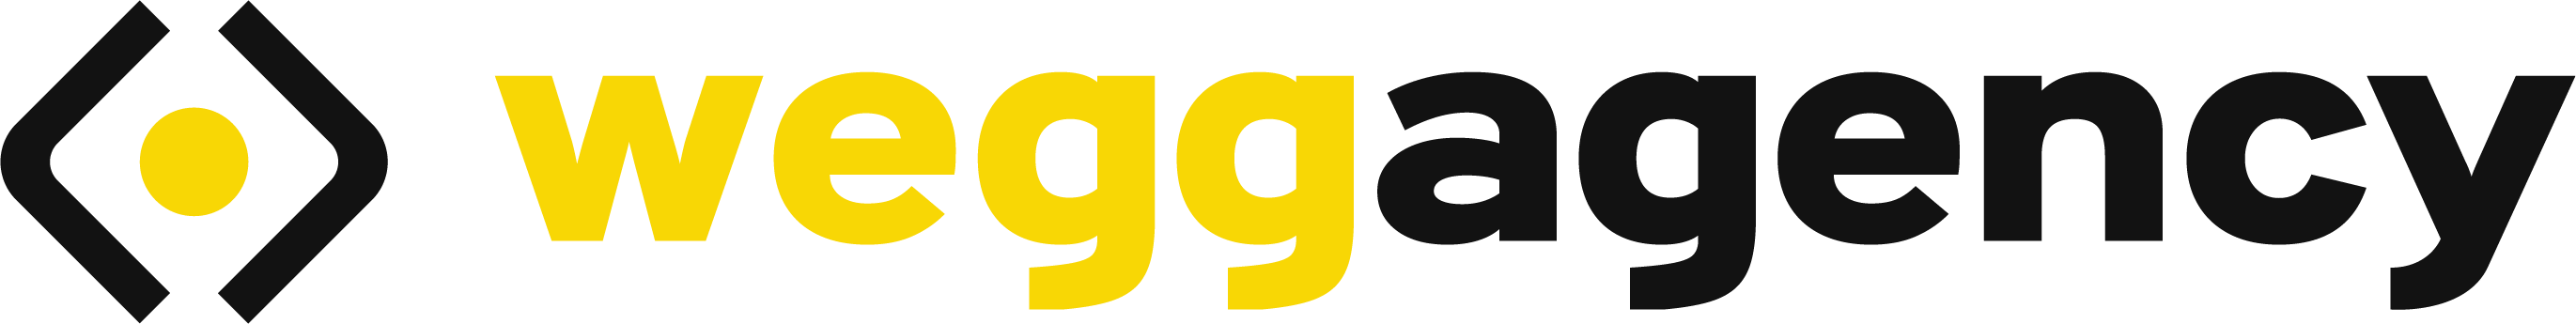 logo-weggagency